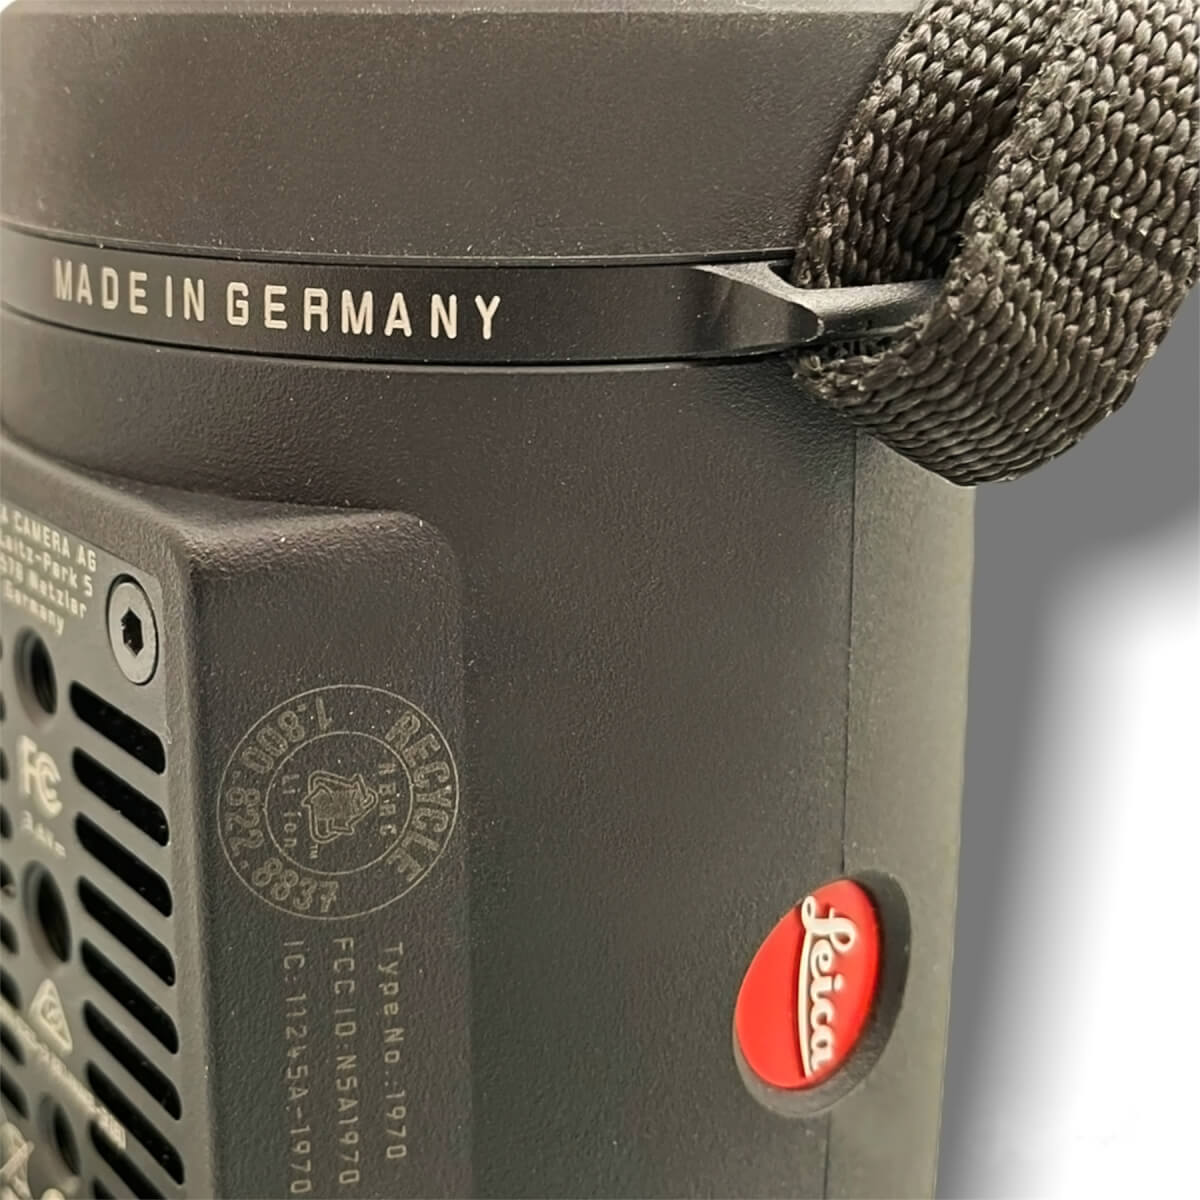 Particolare della scritta "Made in Germany" sulla termocamera Calonox. Controllate sempre dove viene assemblato il prodotto e chiedete da quali componenti utilizza.